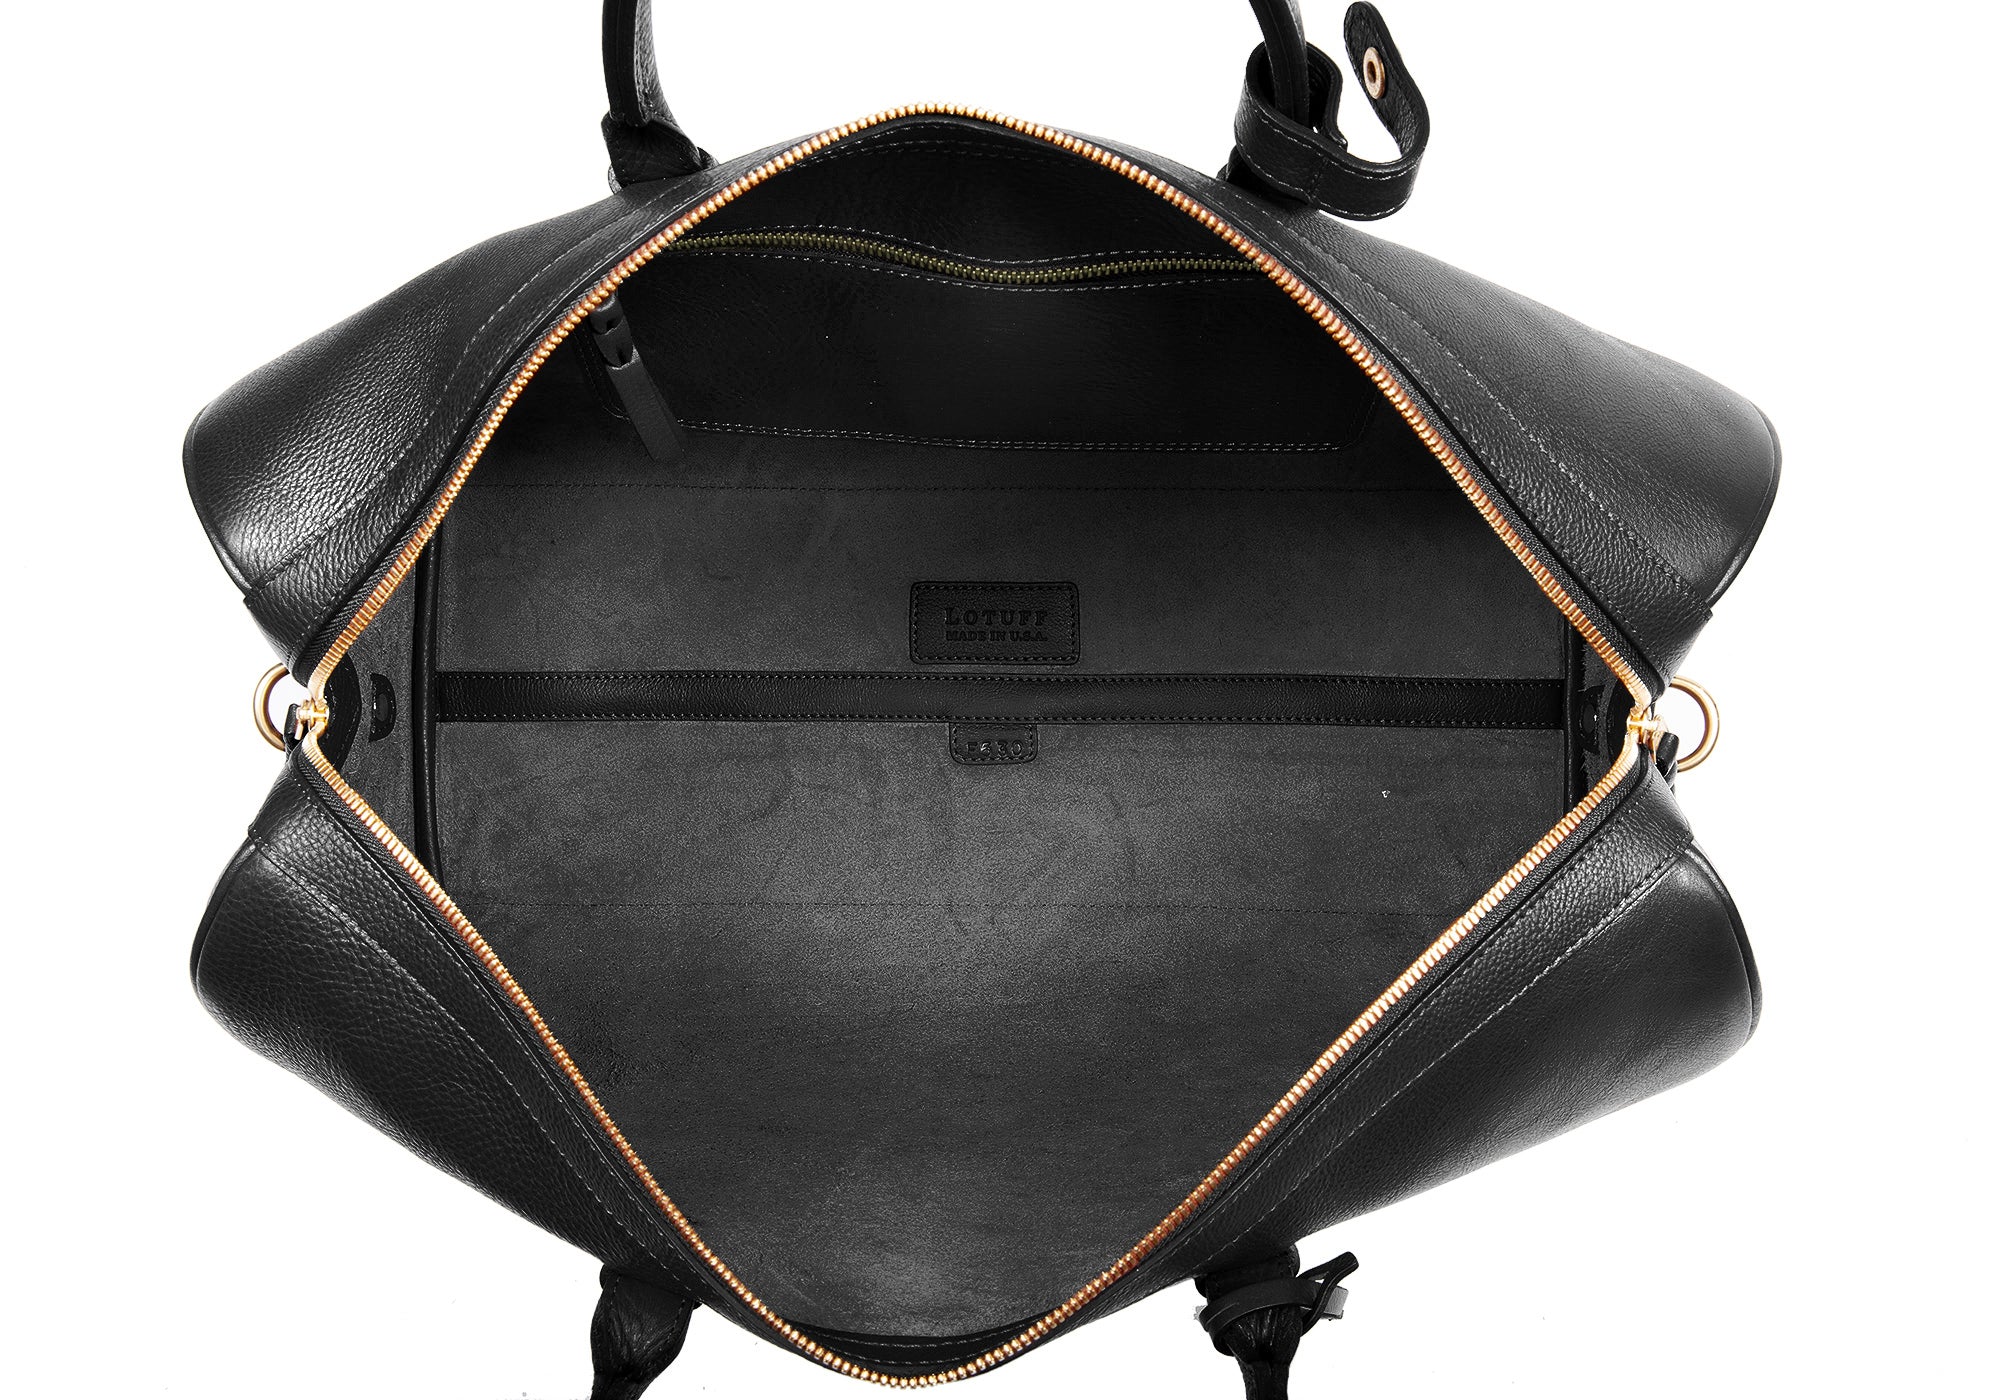 Inner Leather View of No. 10 Weekender Bag Black